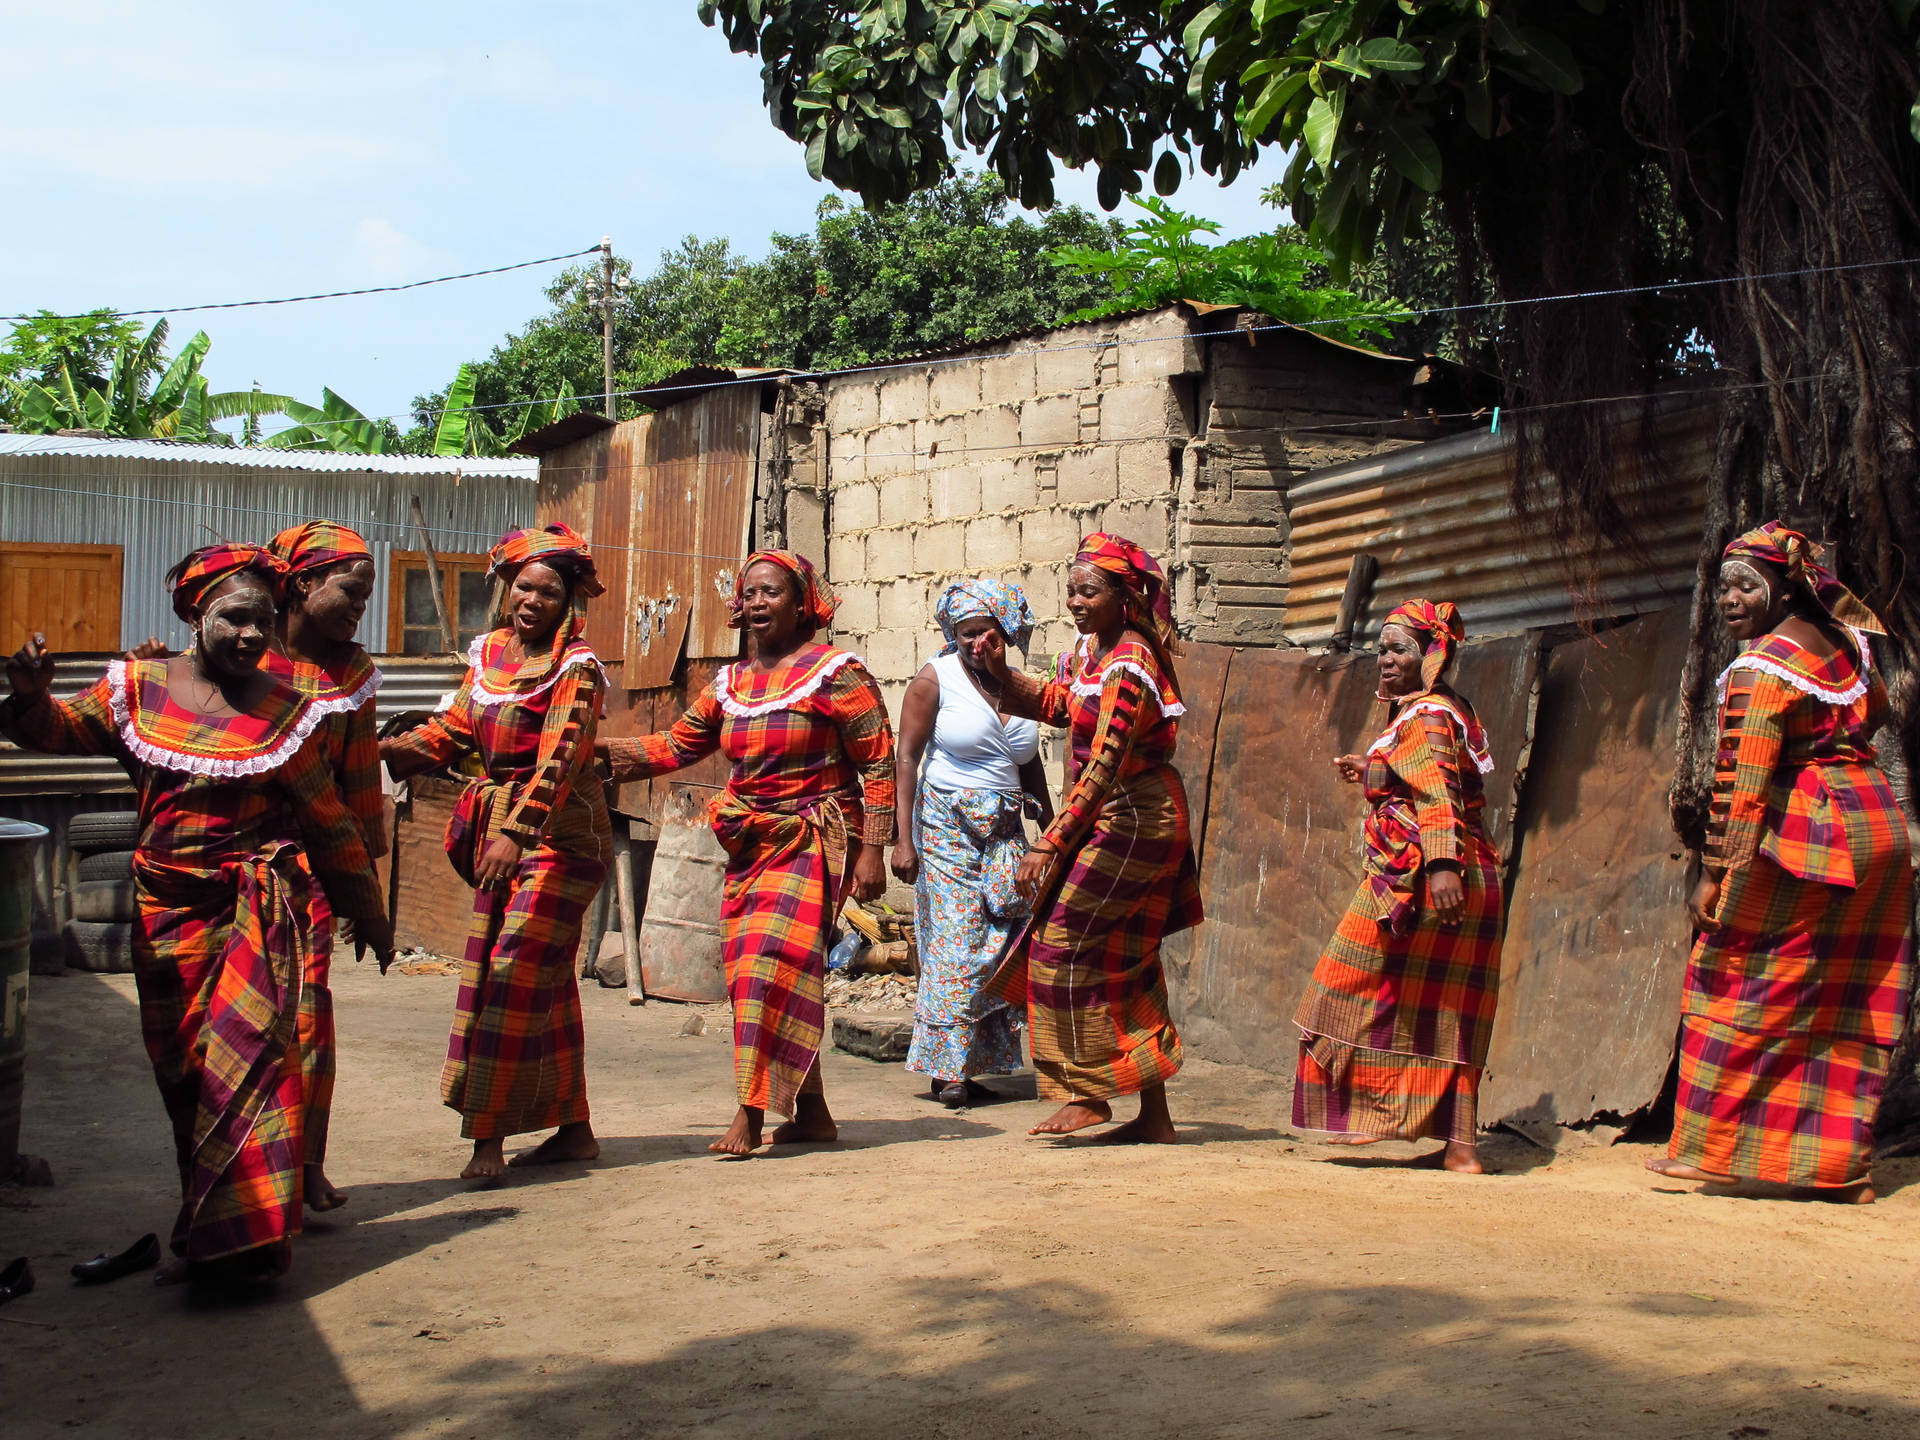 Festivalde Zangbeto En Mozambique Fondo de pantalla